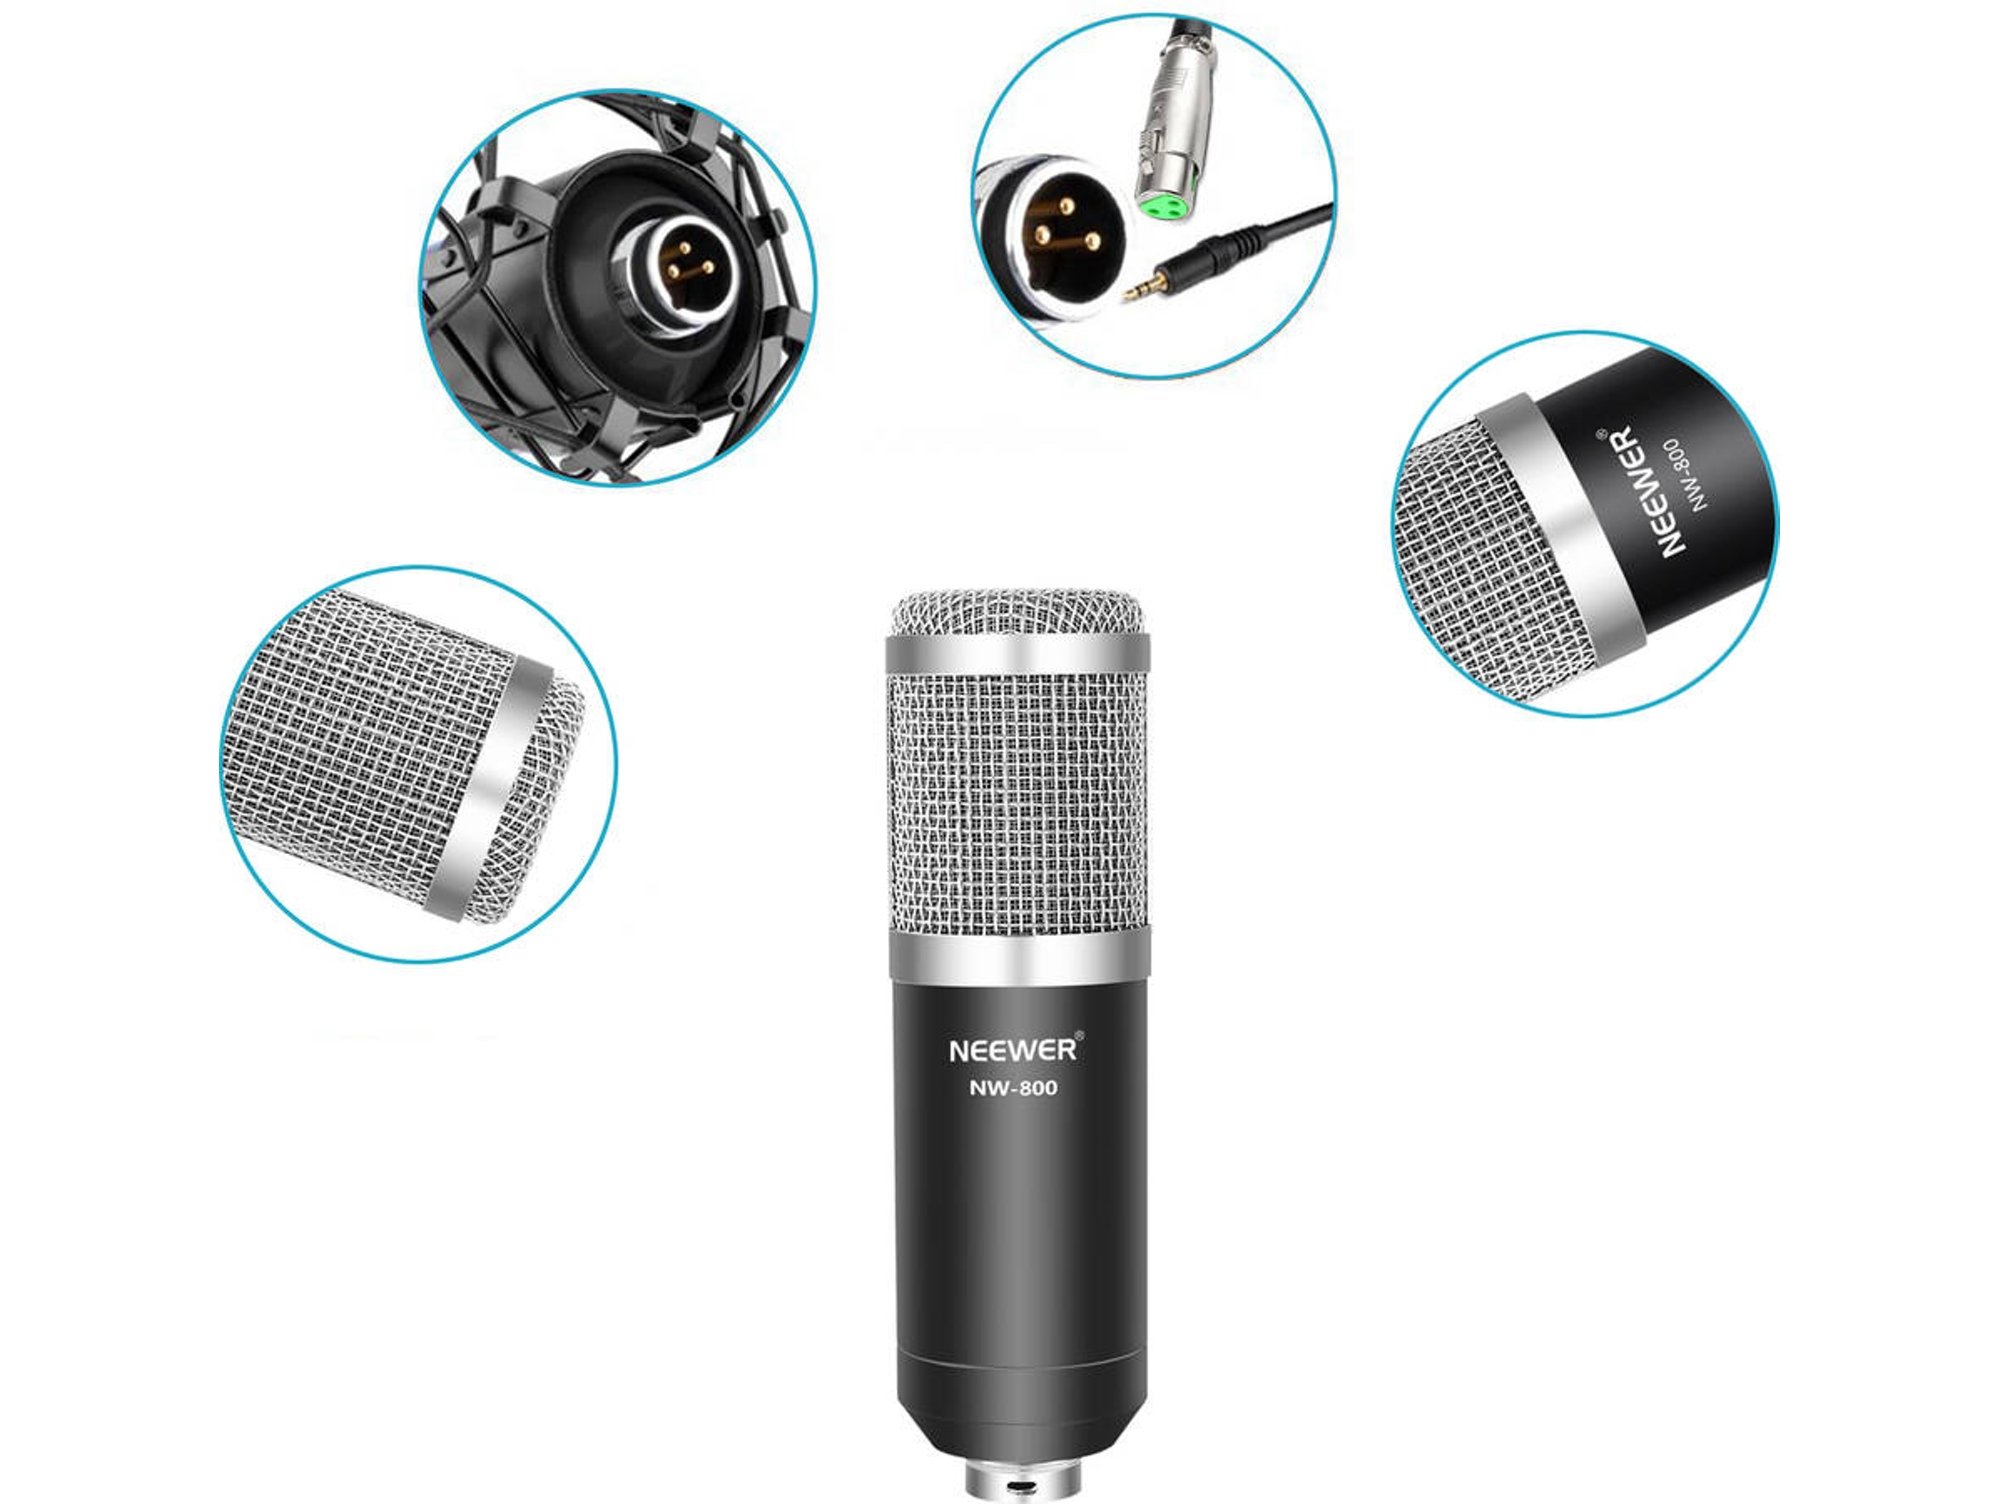 Brazo ajustable Neewer para micrófono - Un soporte para una mejor voz